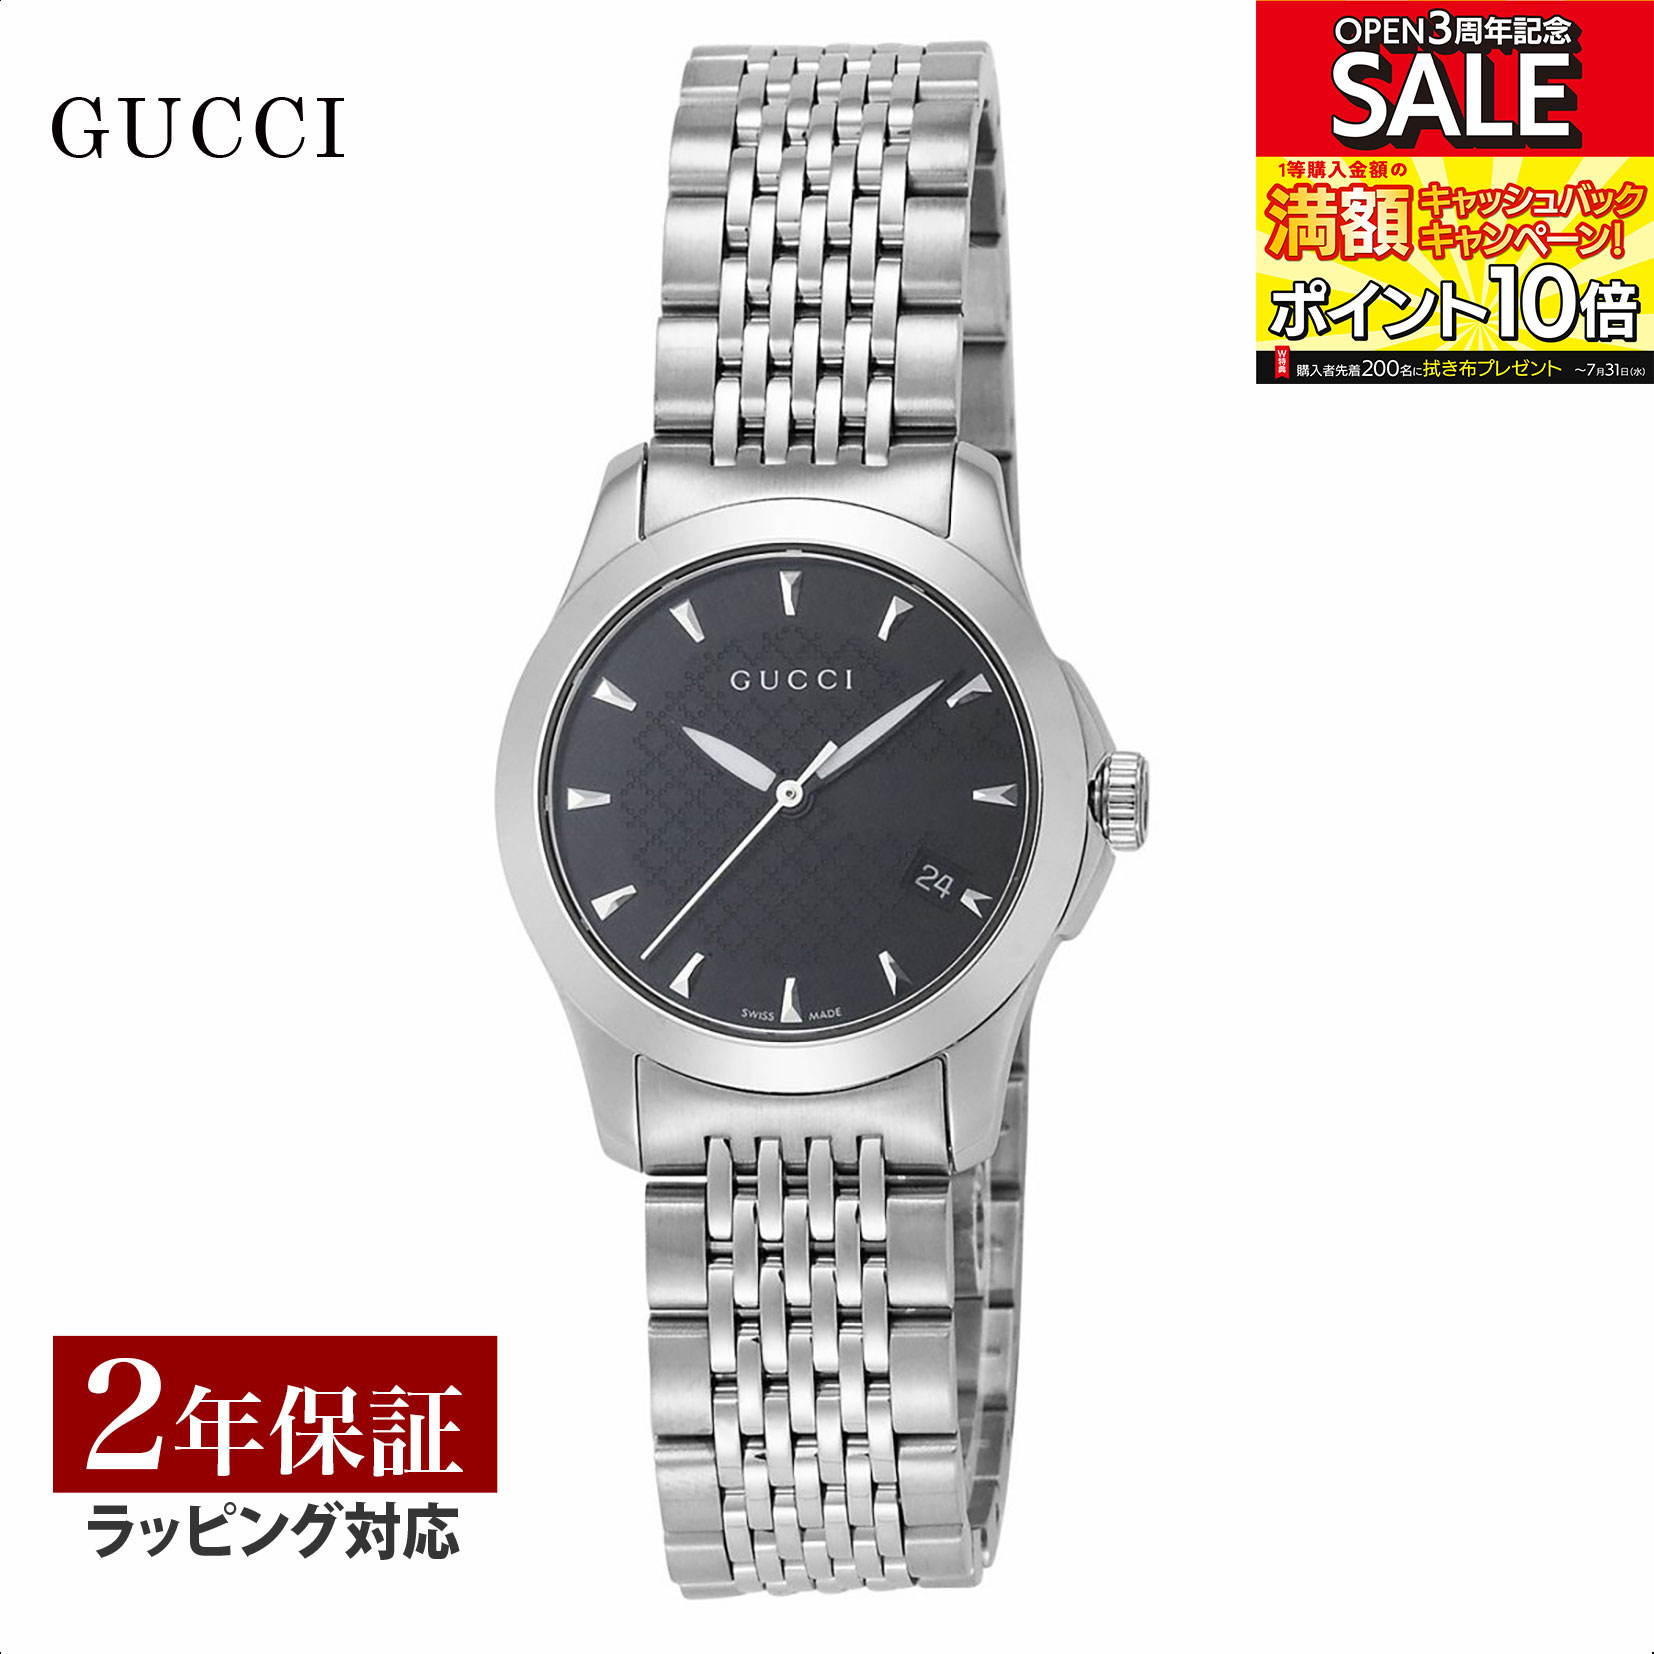 グッチ GUCCI レディース 時計 G-TIMELESS Gタイムレス クォーツ ブラック YA126502 時計 腕時計 高級腕時計 ブランド